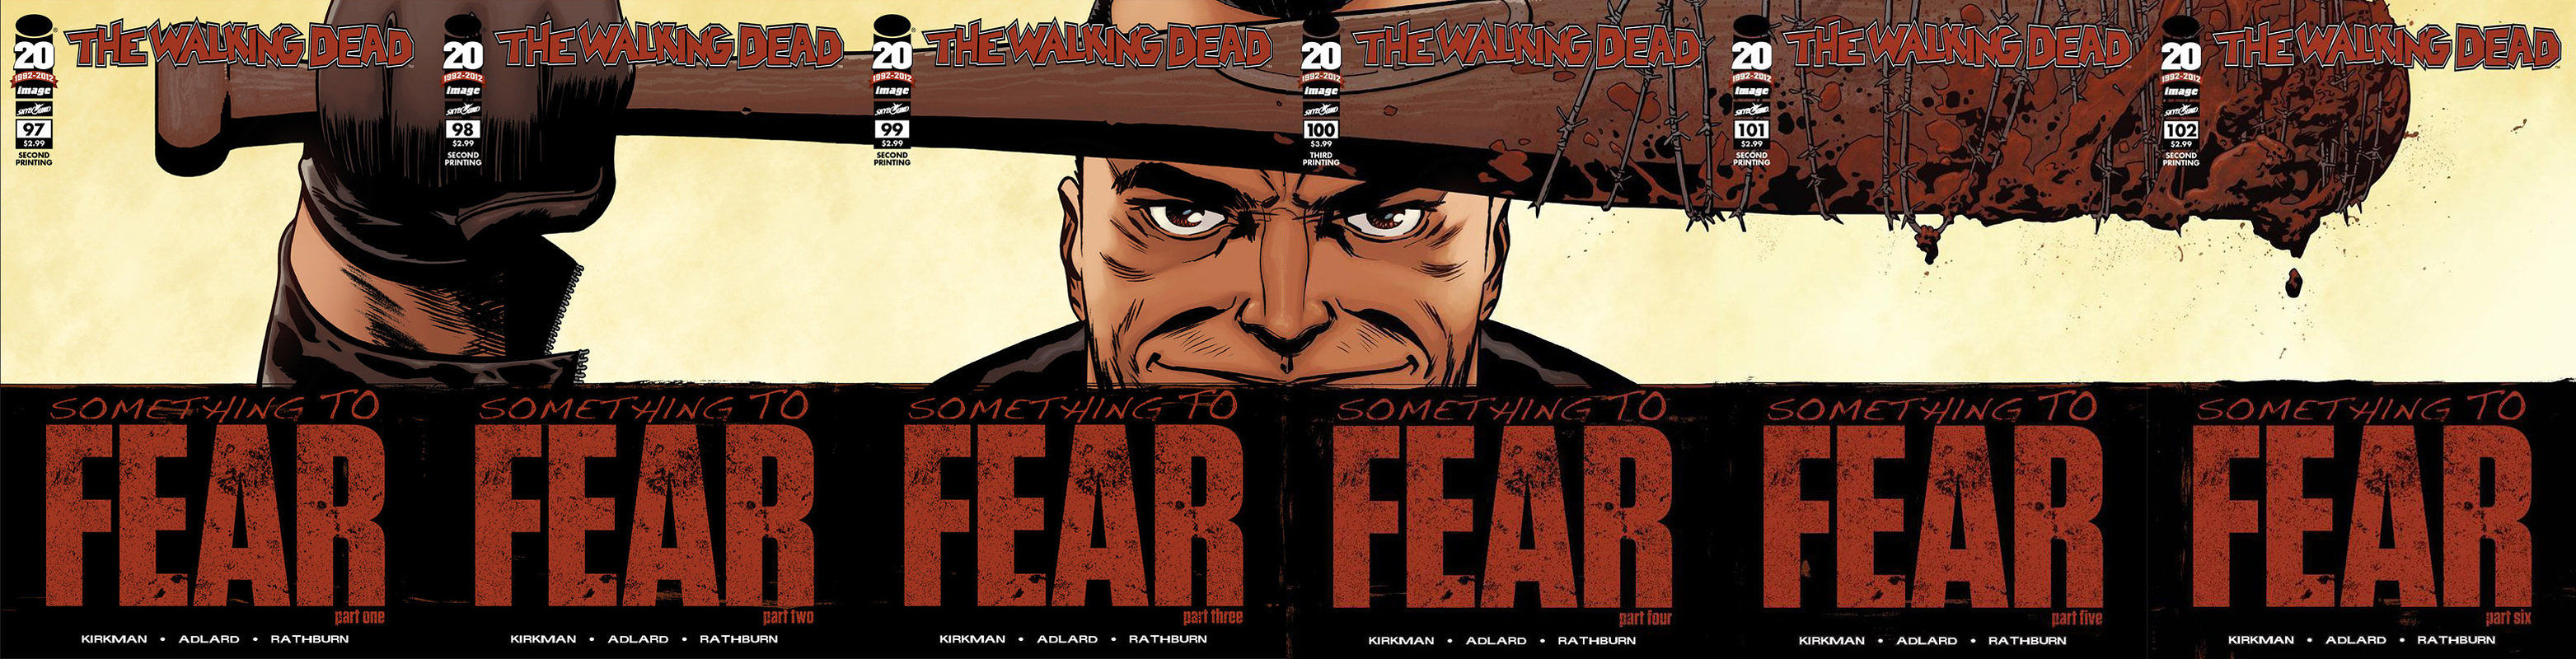 Fear Negan The Walking Dead Jon Hamm For Jpeg Jpg